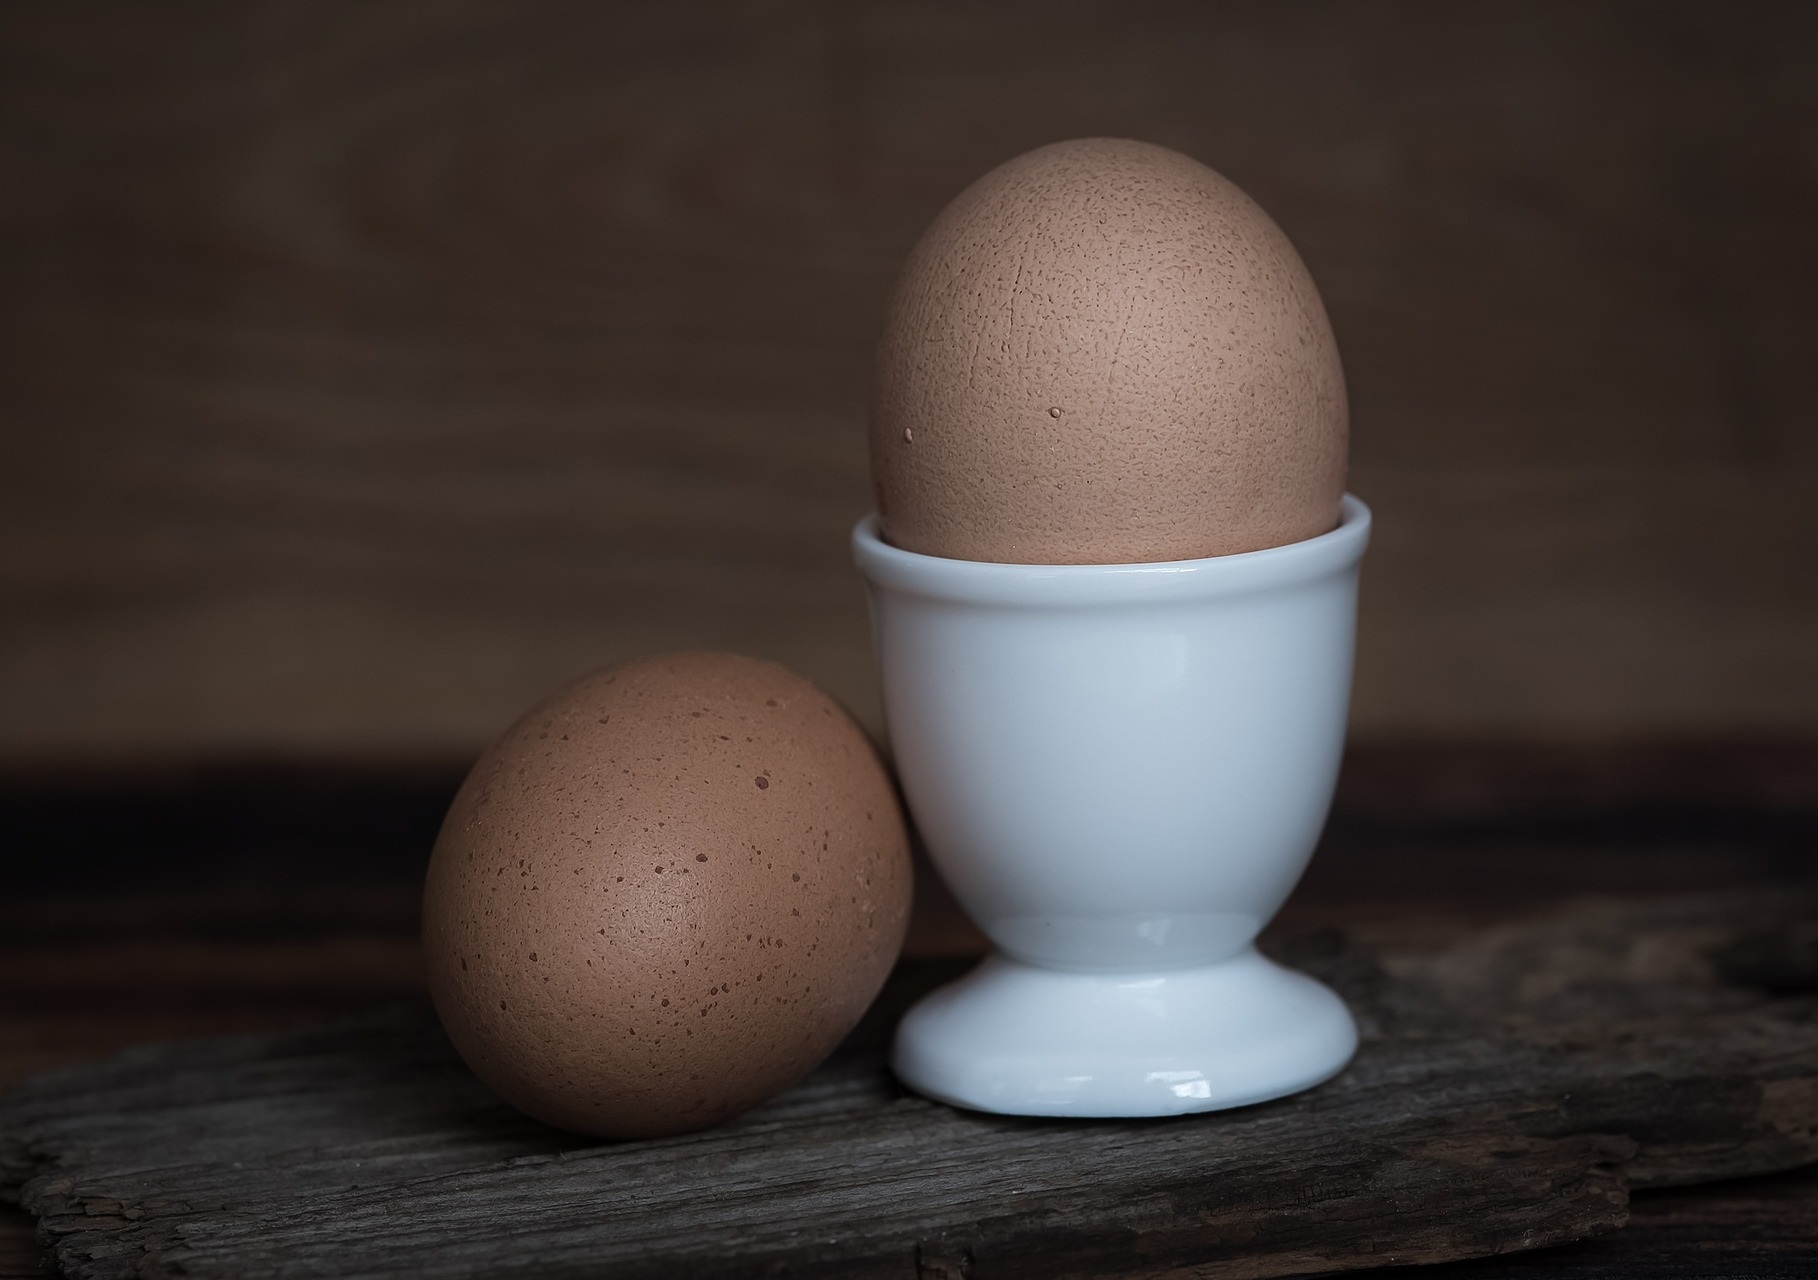 端午連假》端午立蛋也吃蛋 食藥署教你挑蛋小技巧 | 生活 | Newtalk新聞